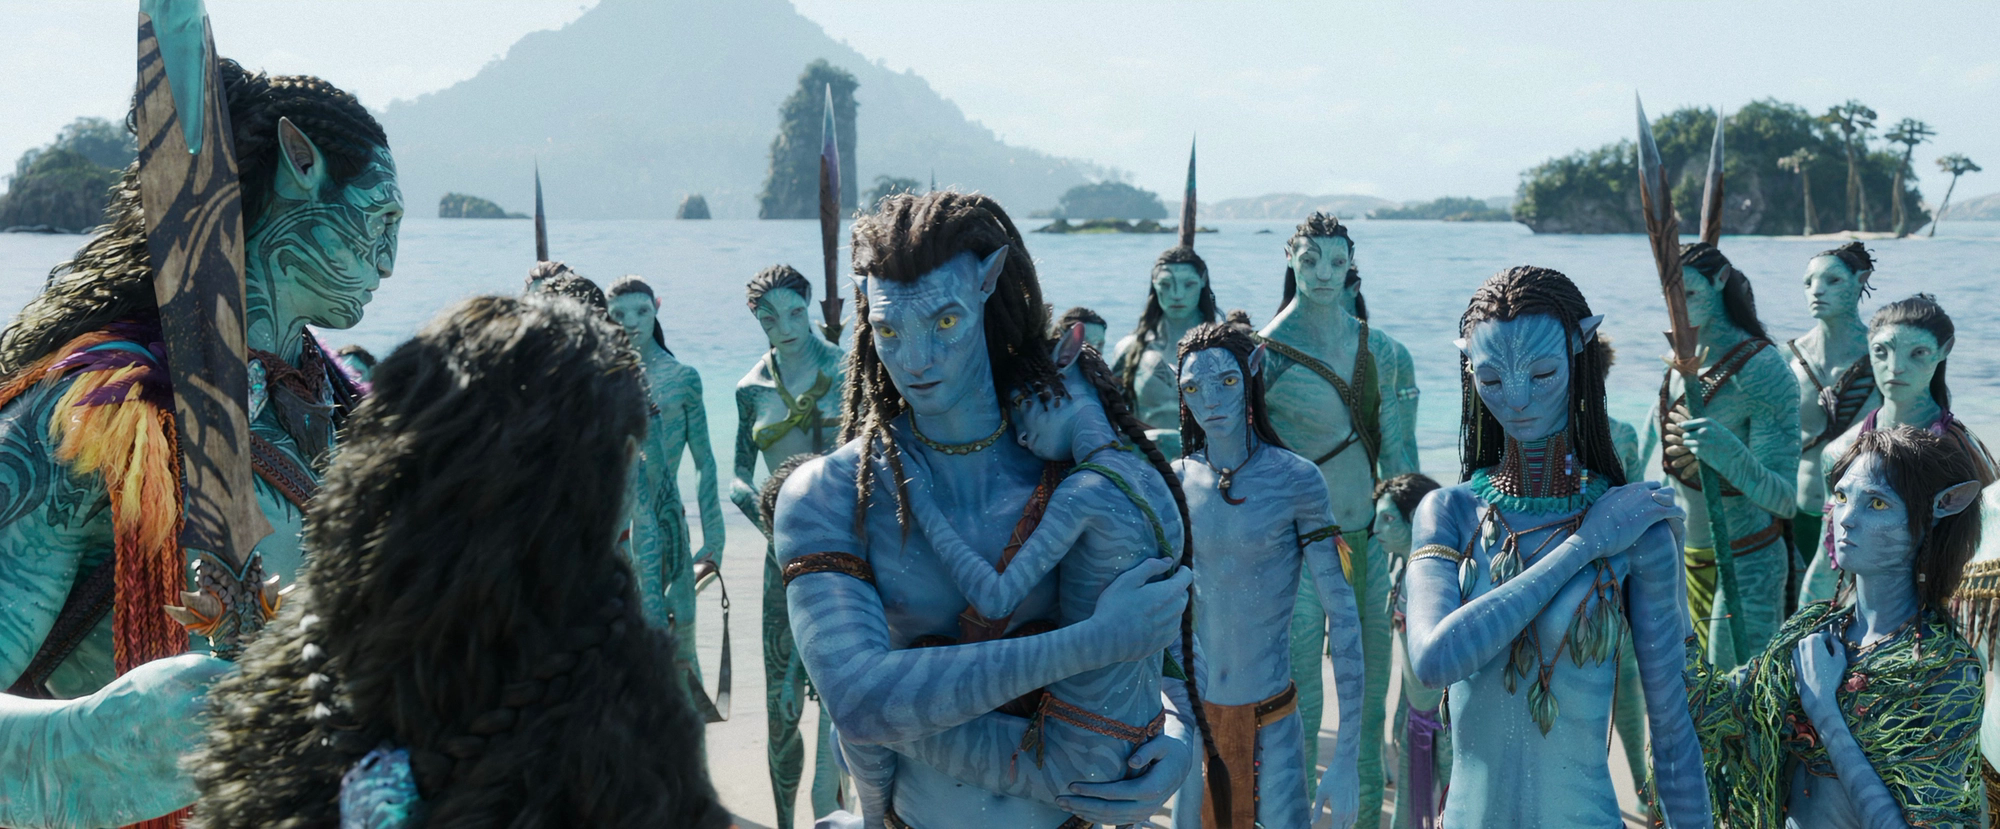 Avatar: The Way Of Water đích thị là kỳ quan thế giới chứ không đơn thuần là một bộ phim - Ảnh 4.